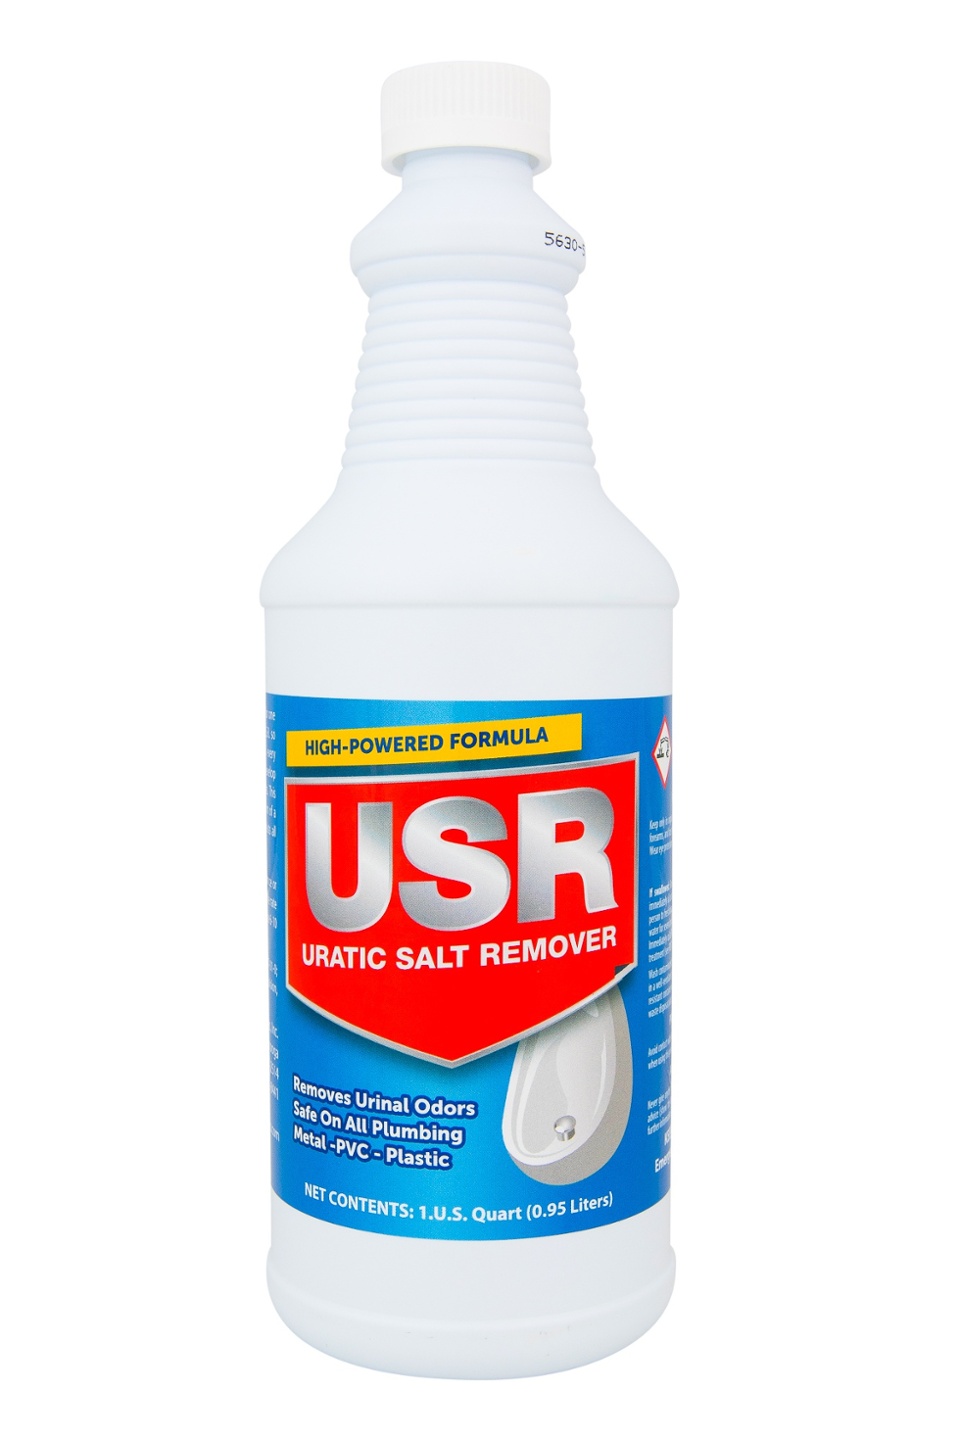 USR Uratic Salt Remover Keeps Urinals Free-Flowing